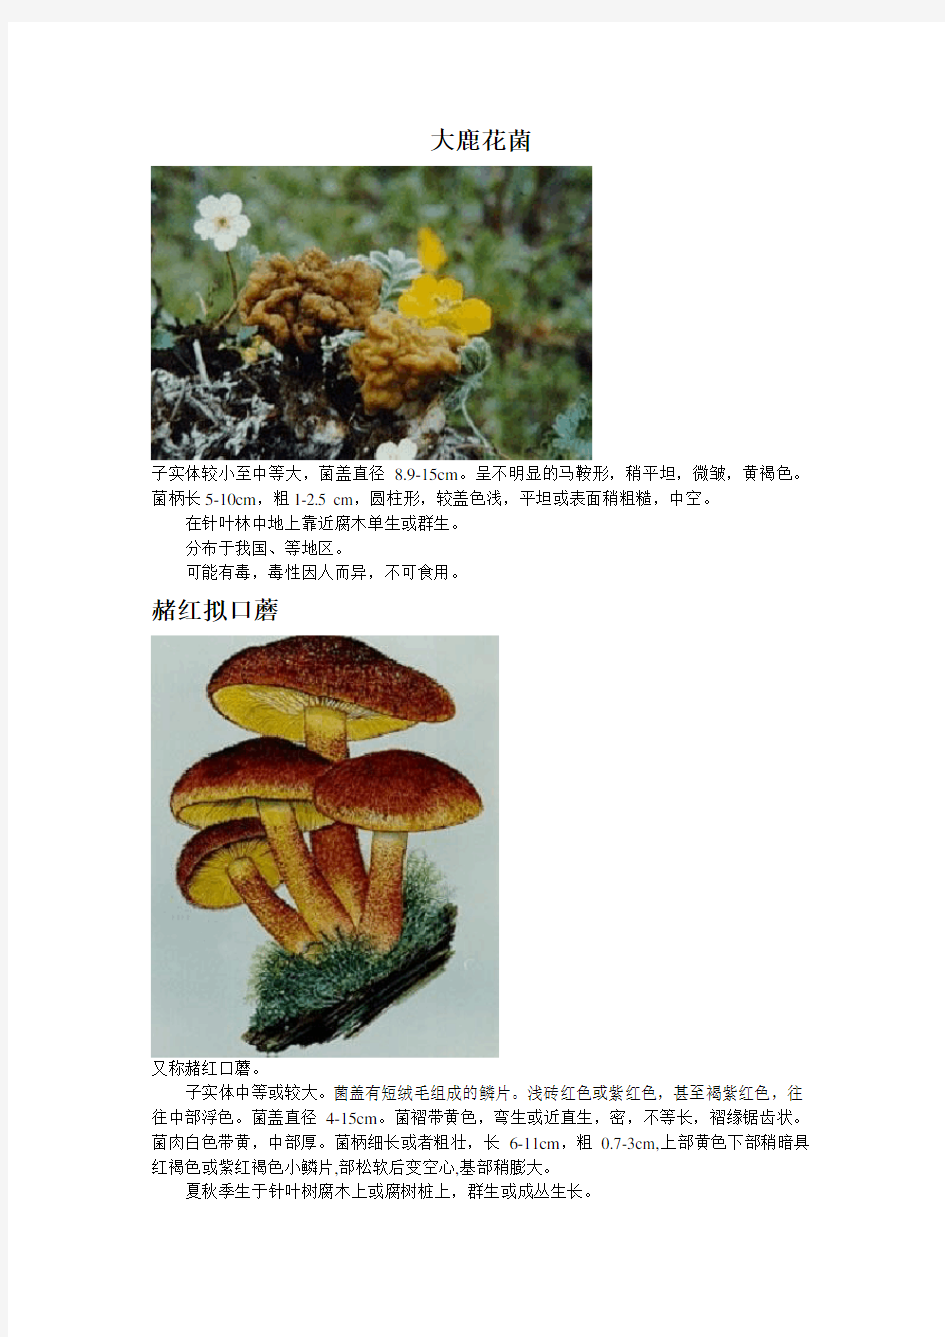 毒蘑菇图片与资料全